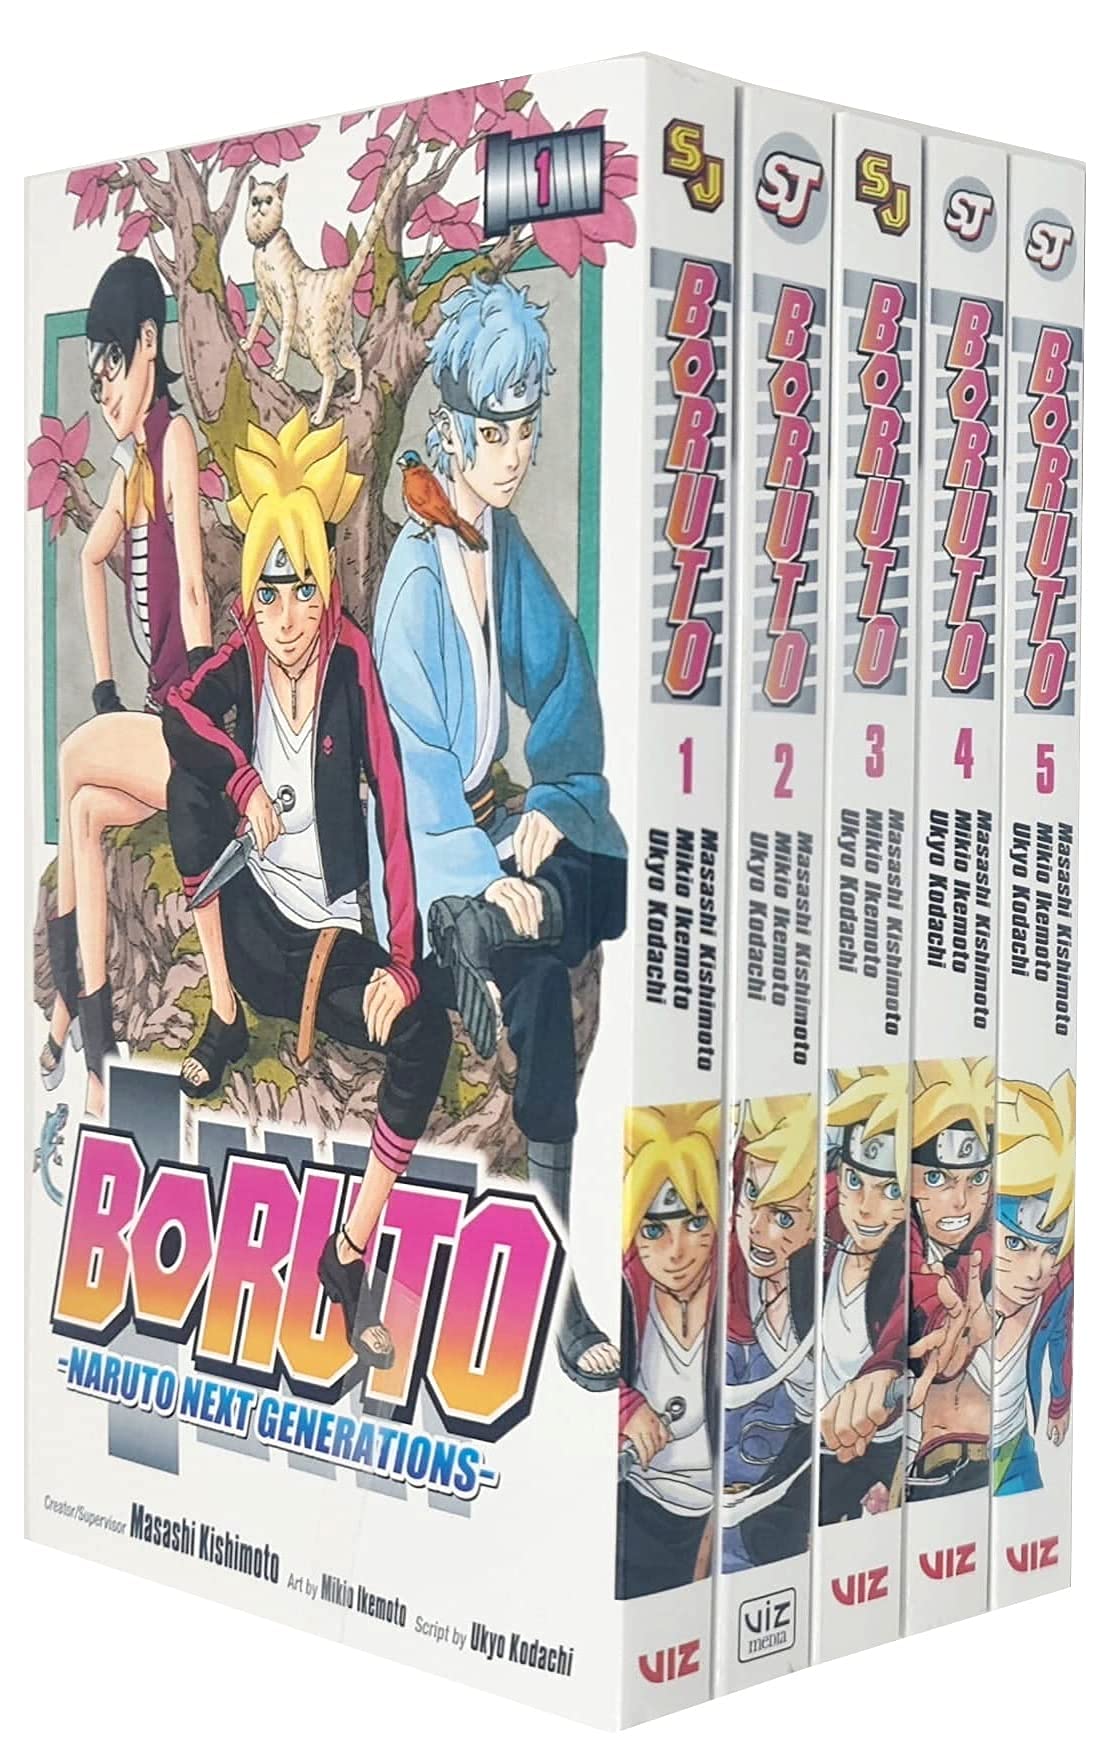 Mua Boruto Naruto Next Generations Series Books Collection Set By Masashi Kishimoto Ukyo